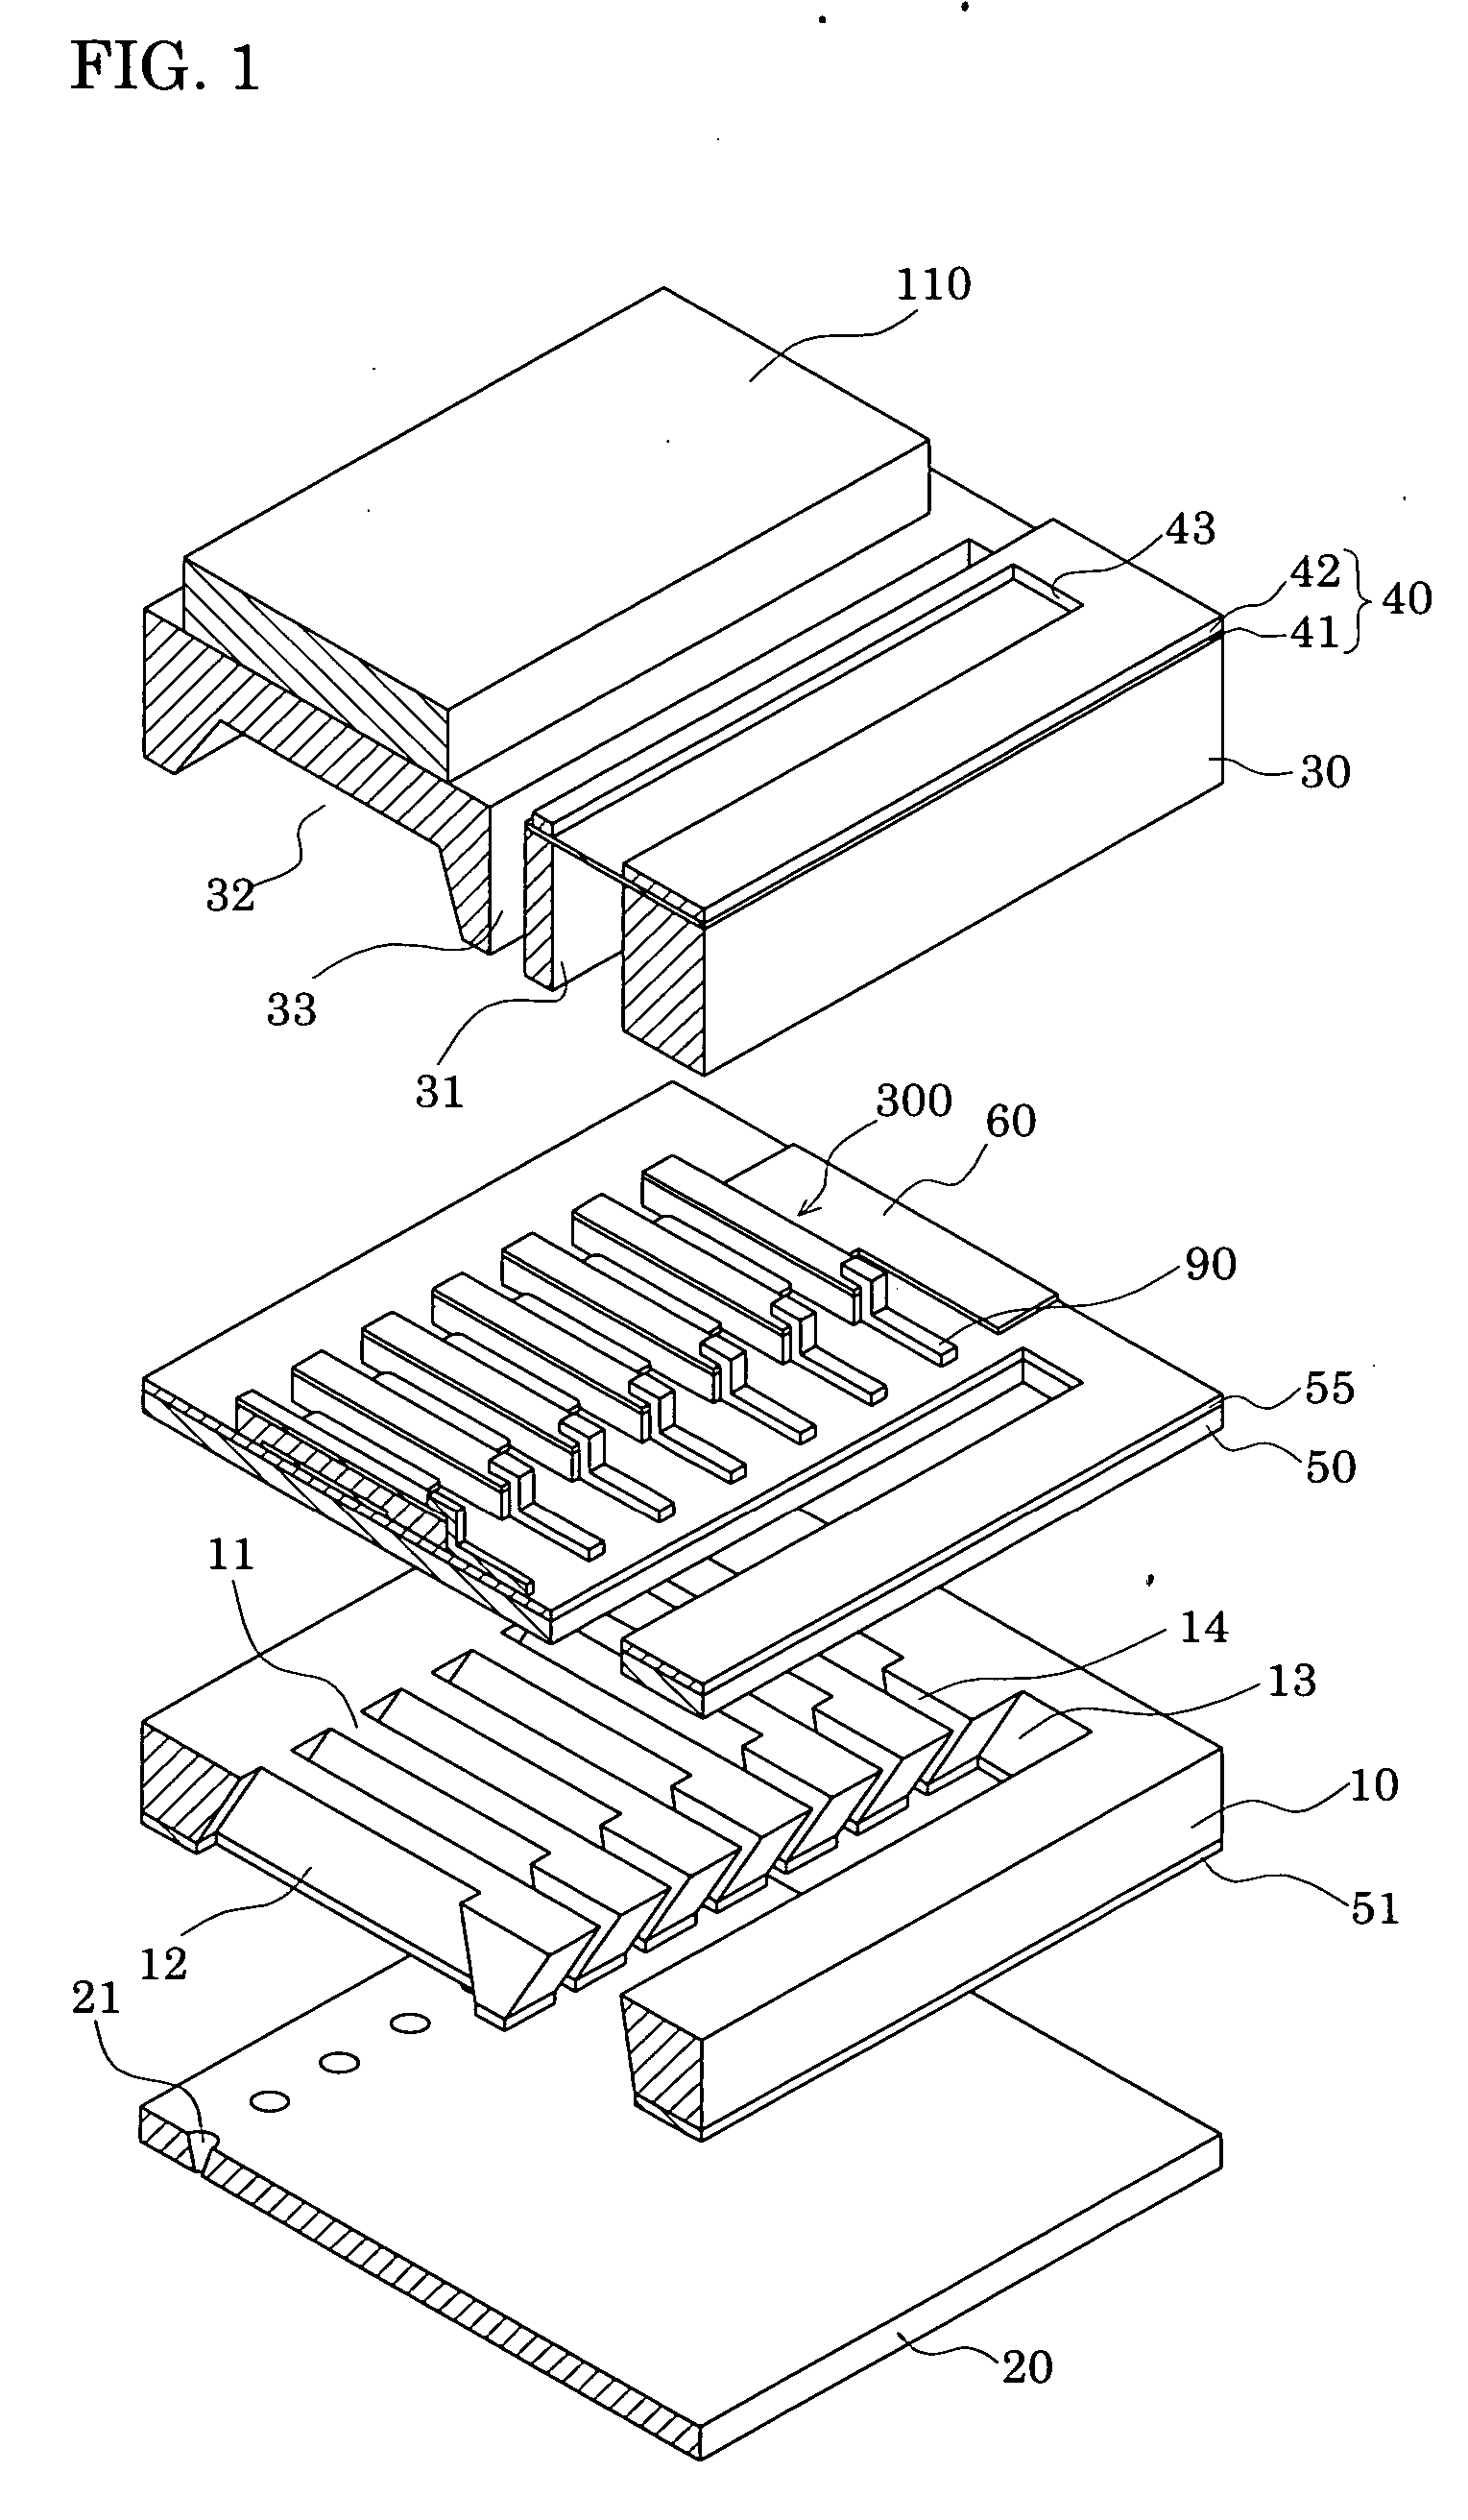 Liquid-jet head, method of manufacturing the same, and liquid-jet apparatus